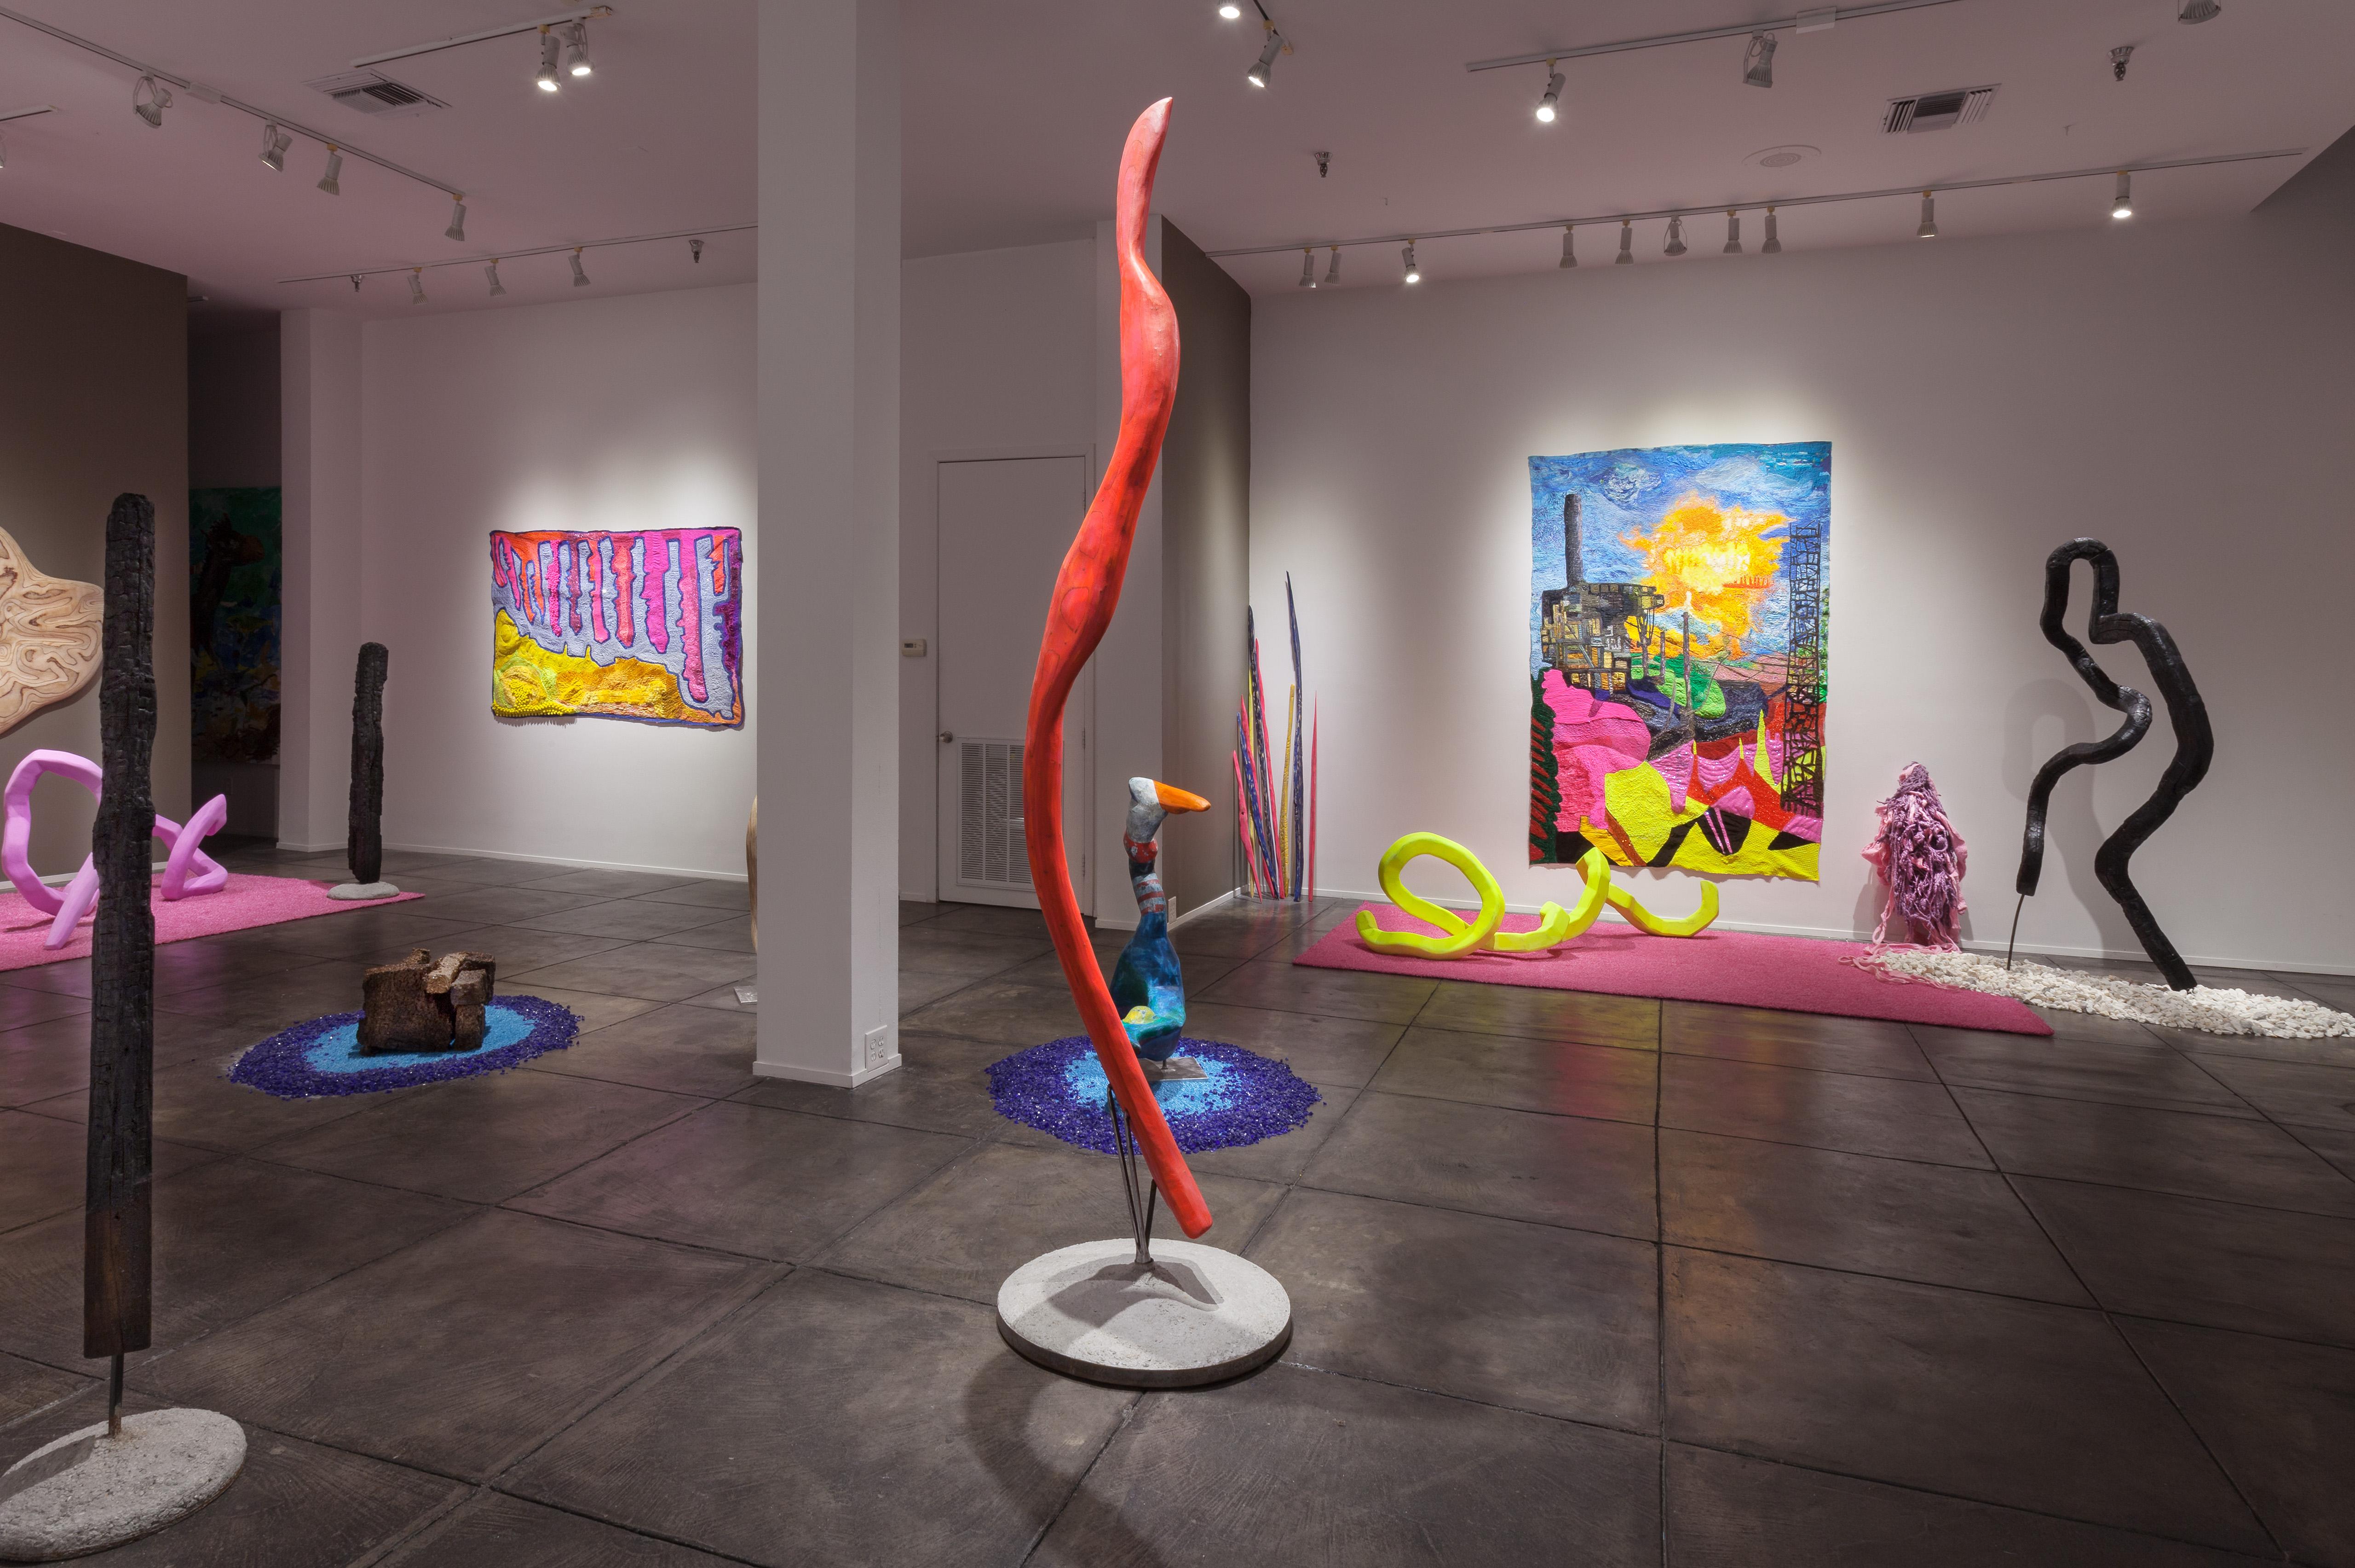 Die JONATHAN FERRARA GALLERY freut sich, Shape-Memory anzukündigen, eine Einzelausstellung mit neuen textilen und skulpturalen Kunstwerken der in New Orleans lebenden Künstlerin Gina Phillips. Diese Ausstellung, die ursprünglich aus ihrem Aufenthalt